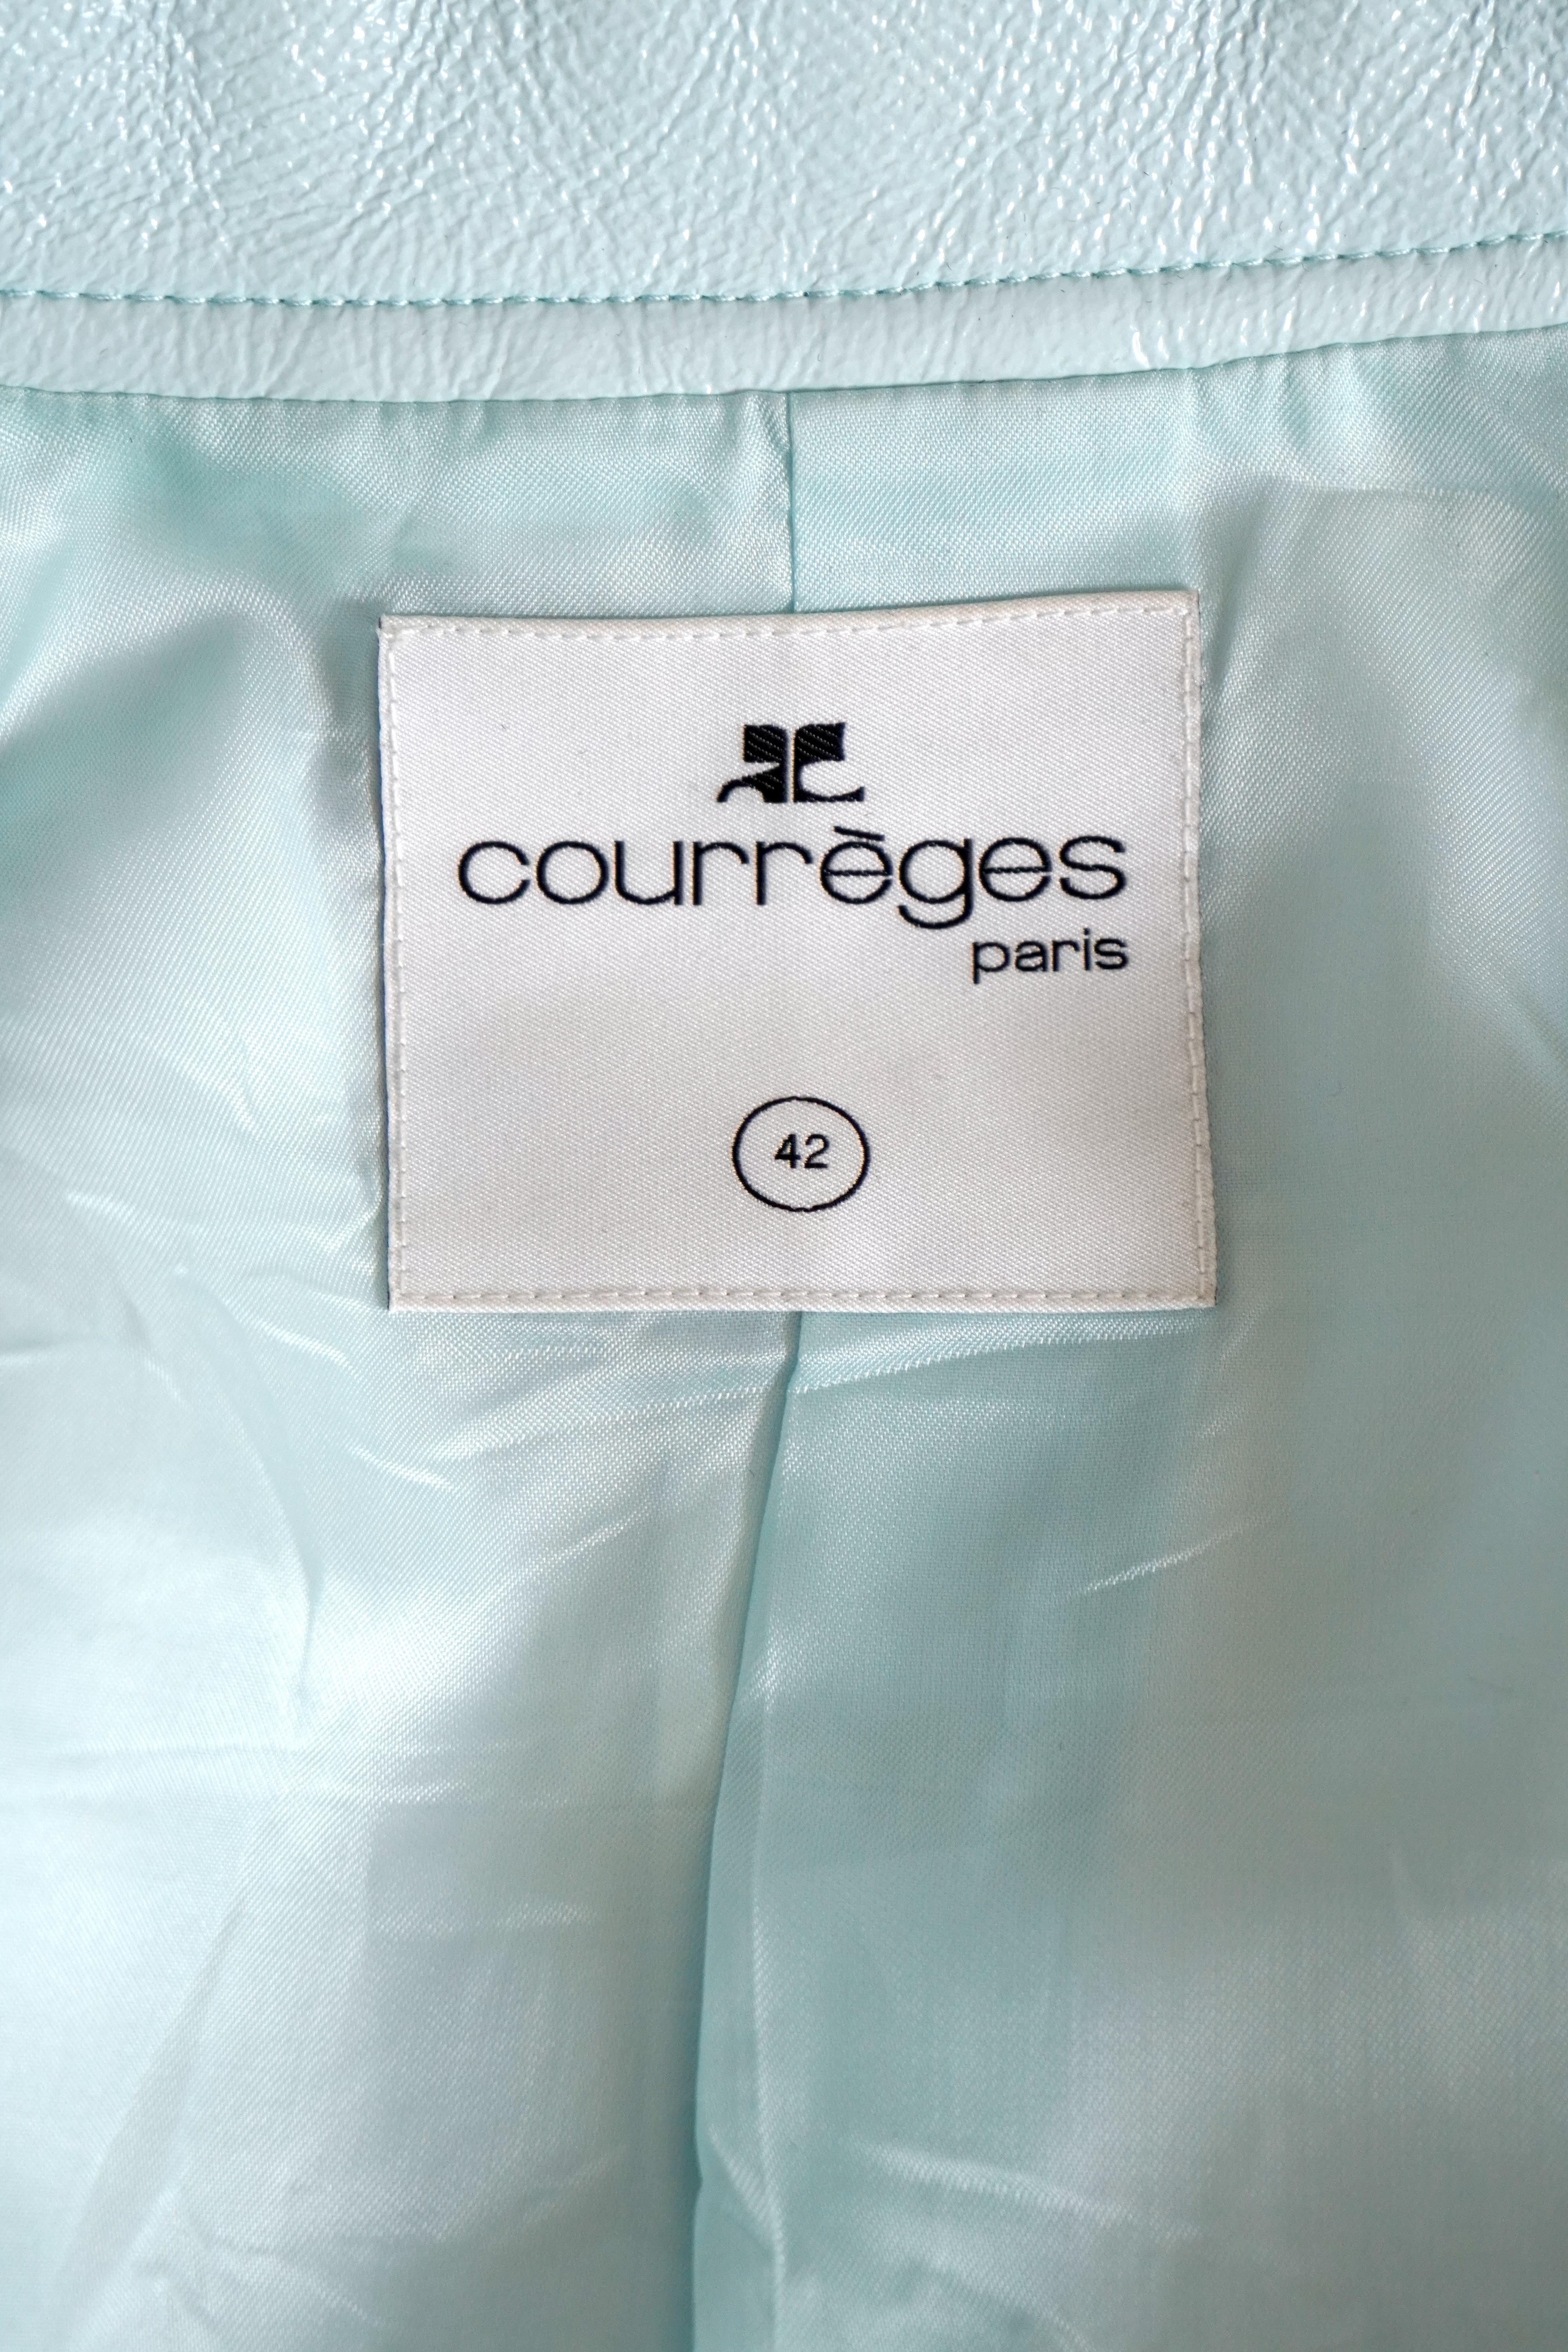 Courrèges Logo Cropped Blue Vinyl Buttoned Jacket sz 42 For Sale 6